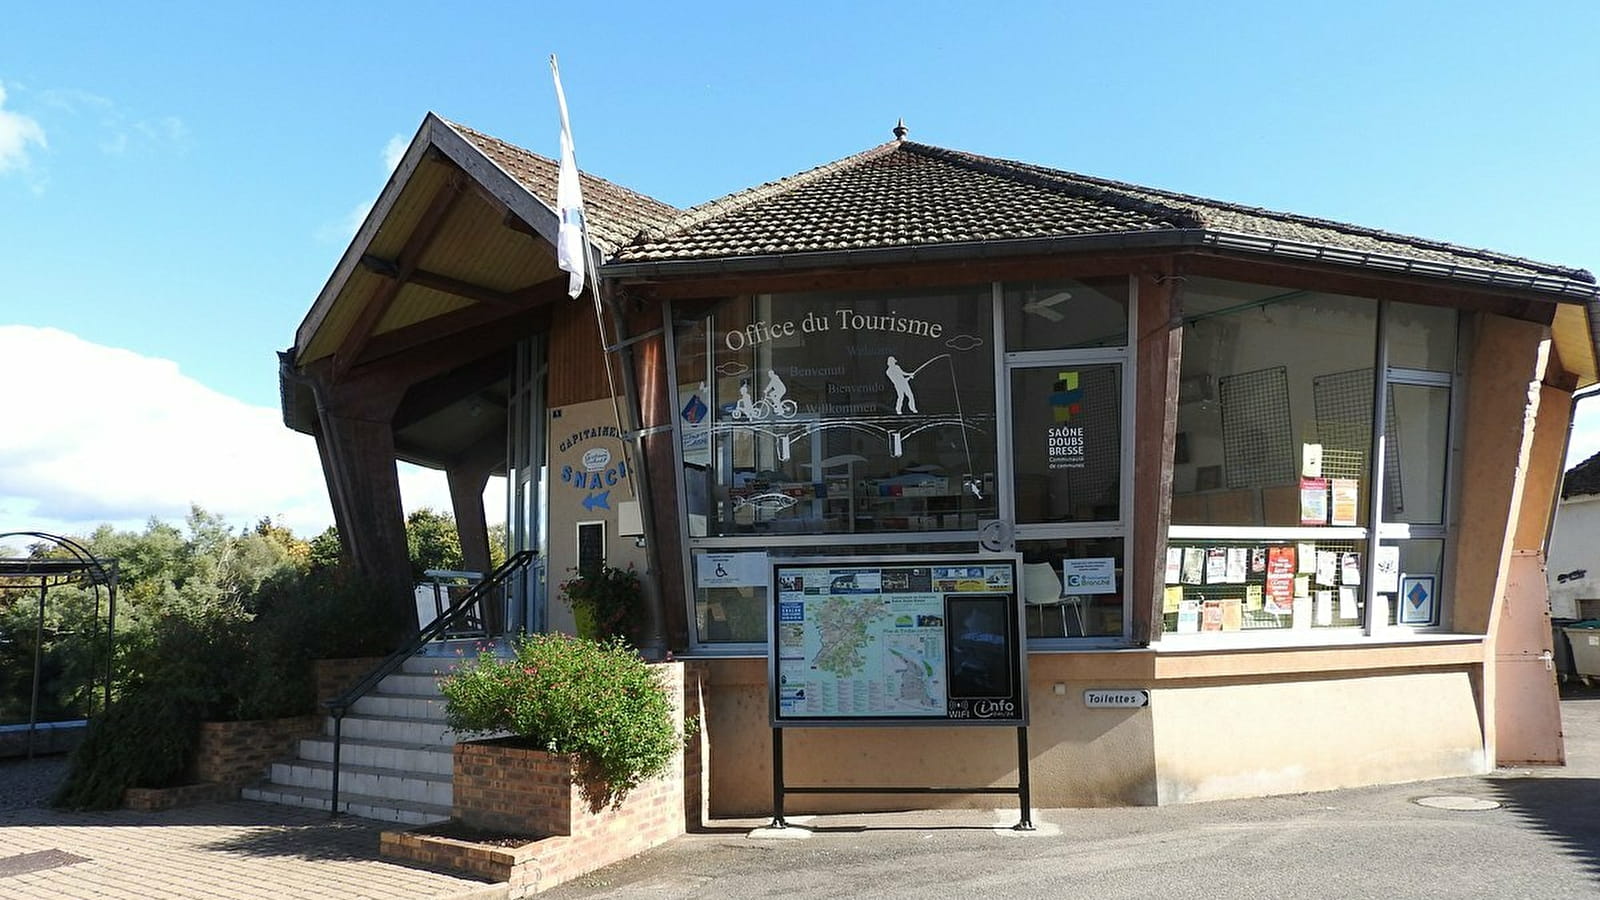 Office de Tourisme Saône Doubs Bresse